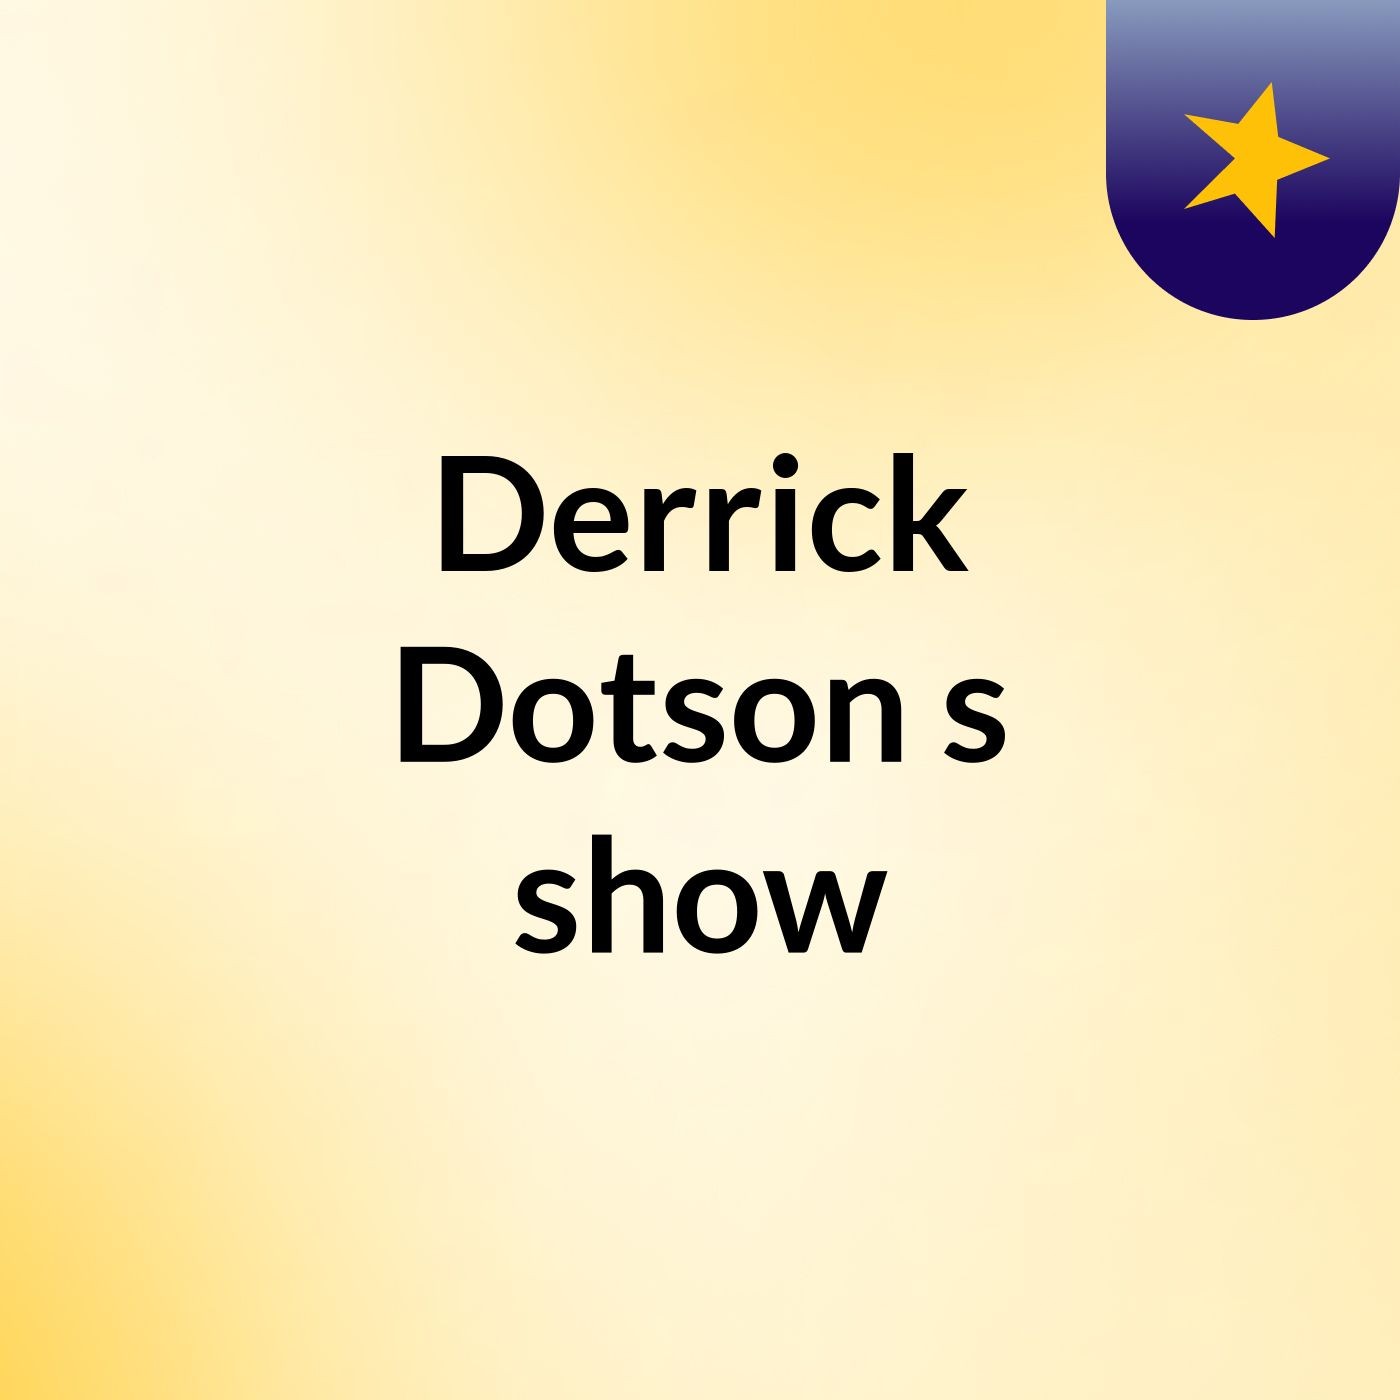 Derrick Dotson's show